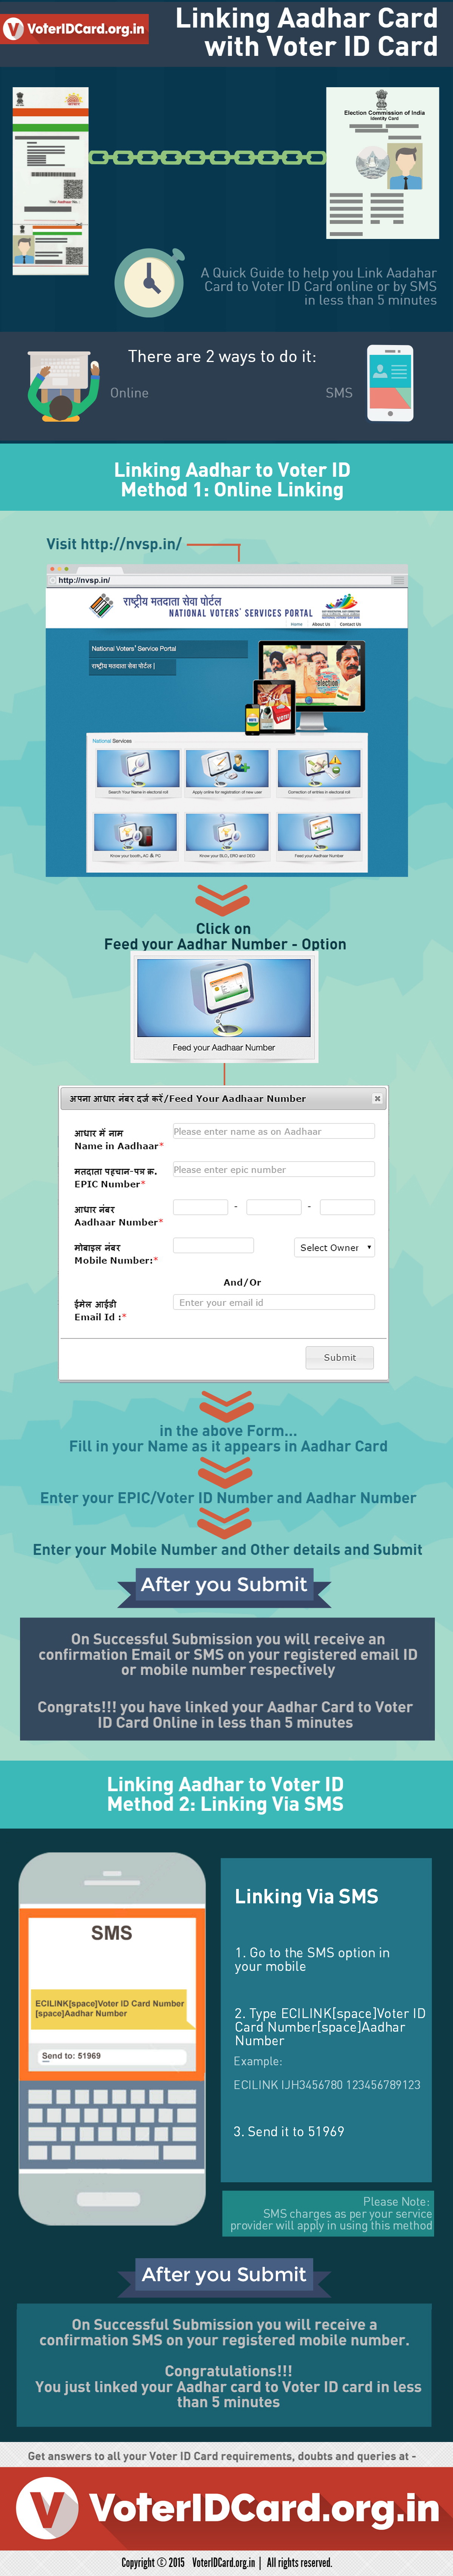 Link Aadhaar Card to VoterIDCard in 5 mins